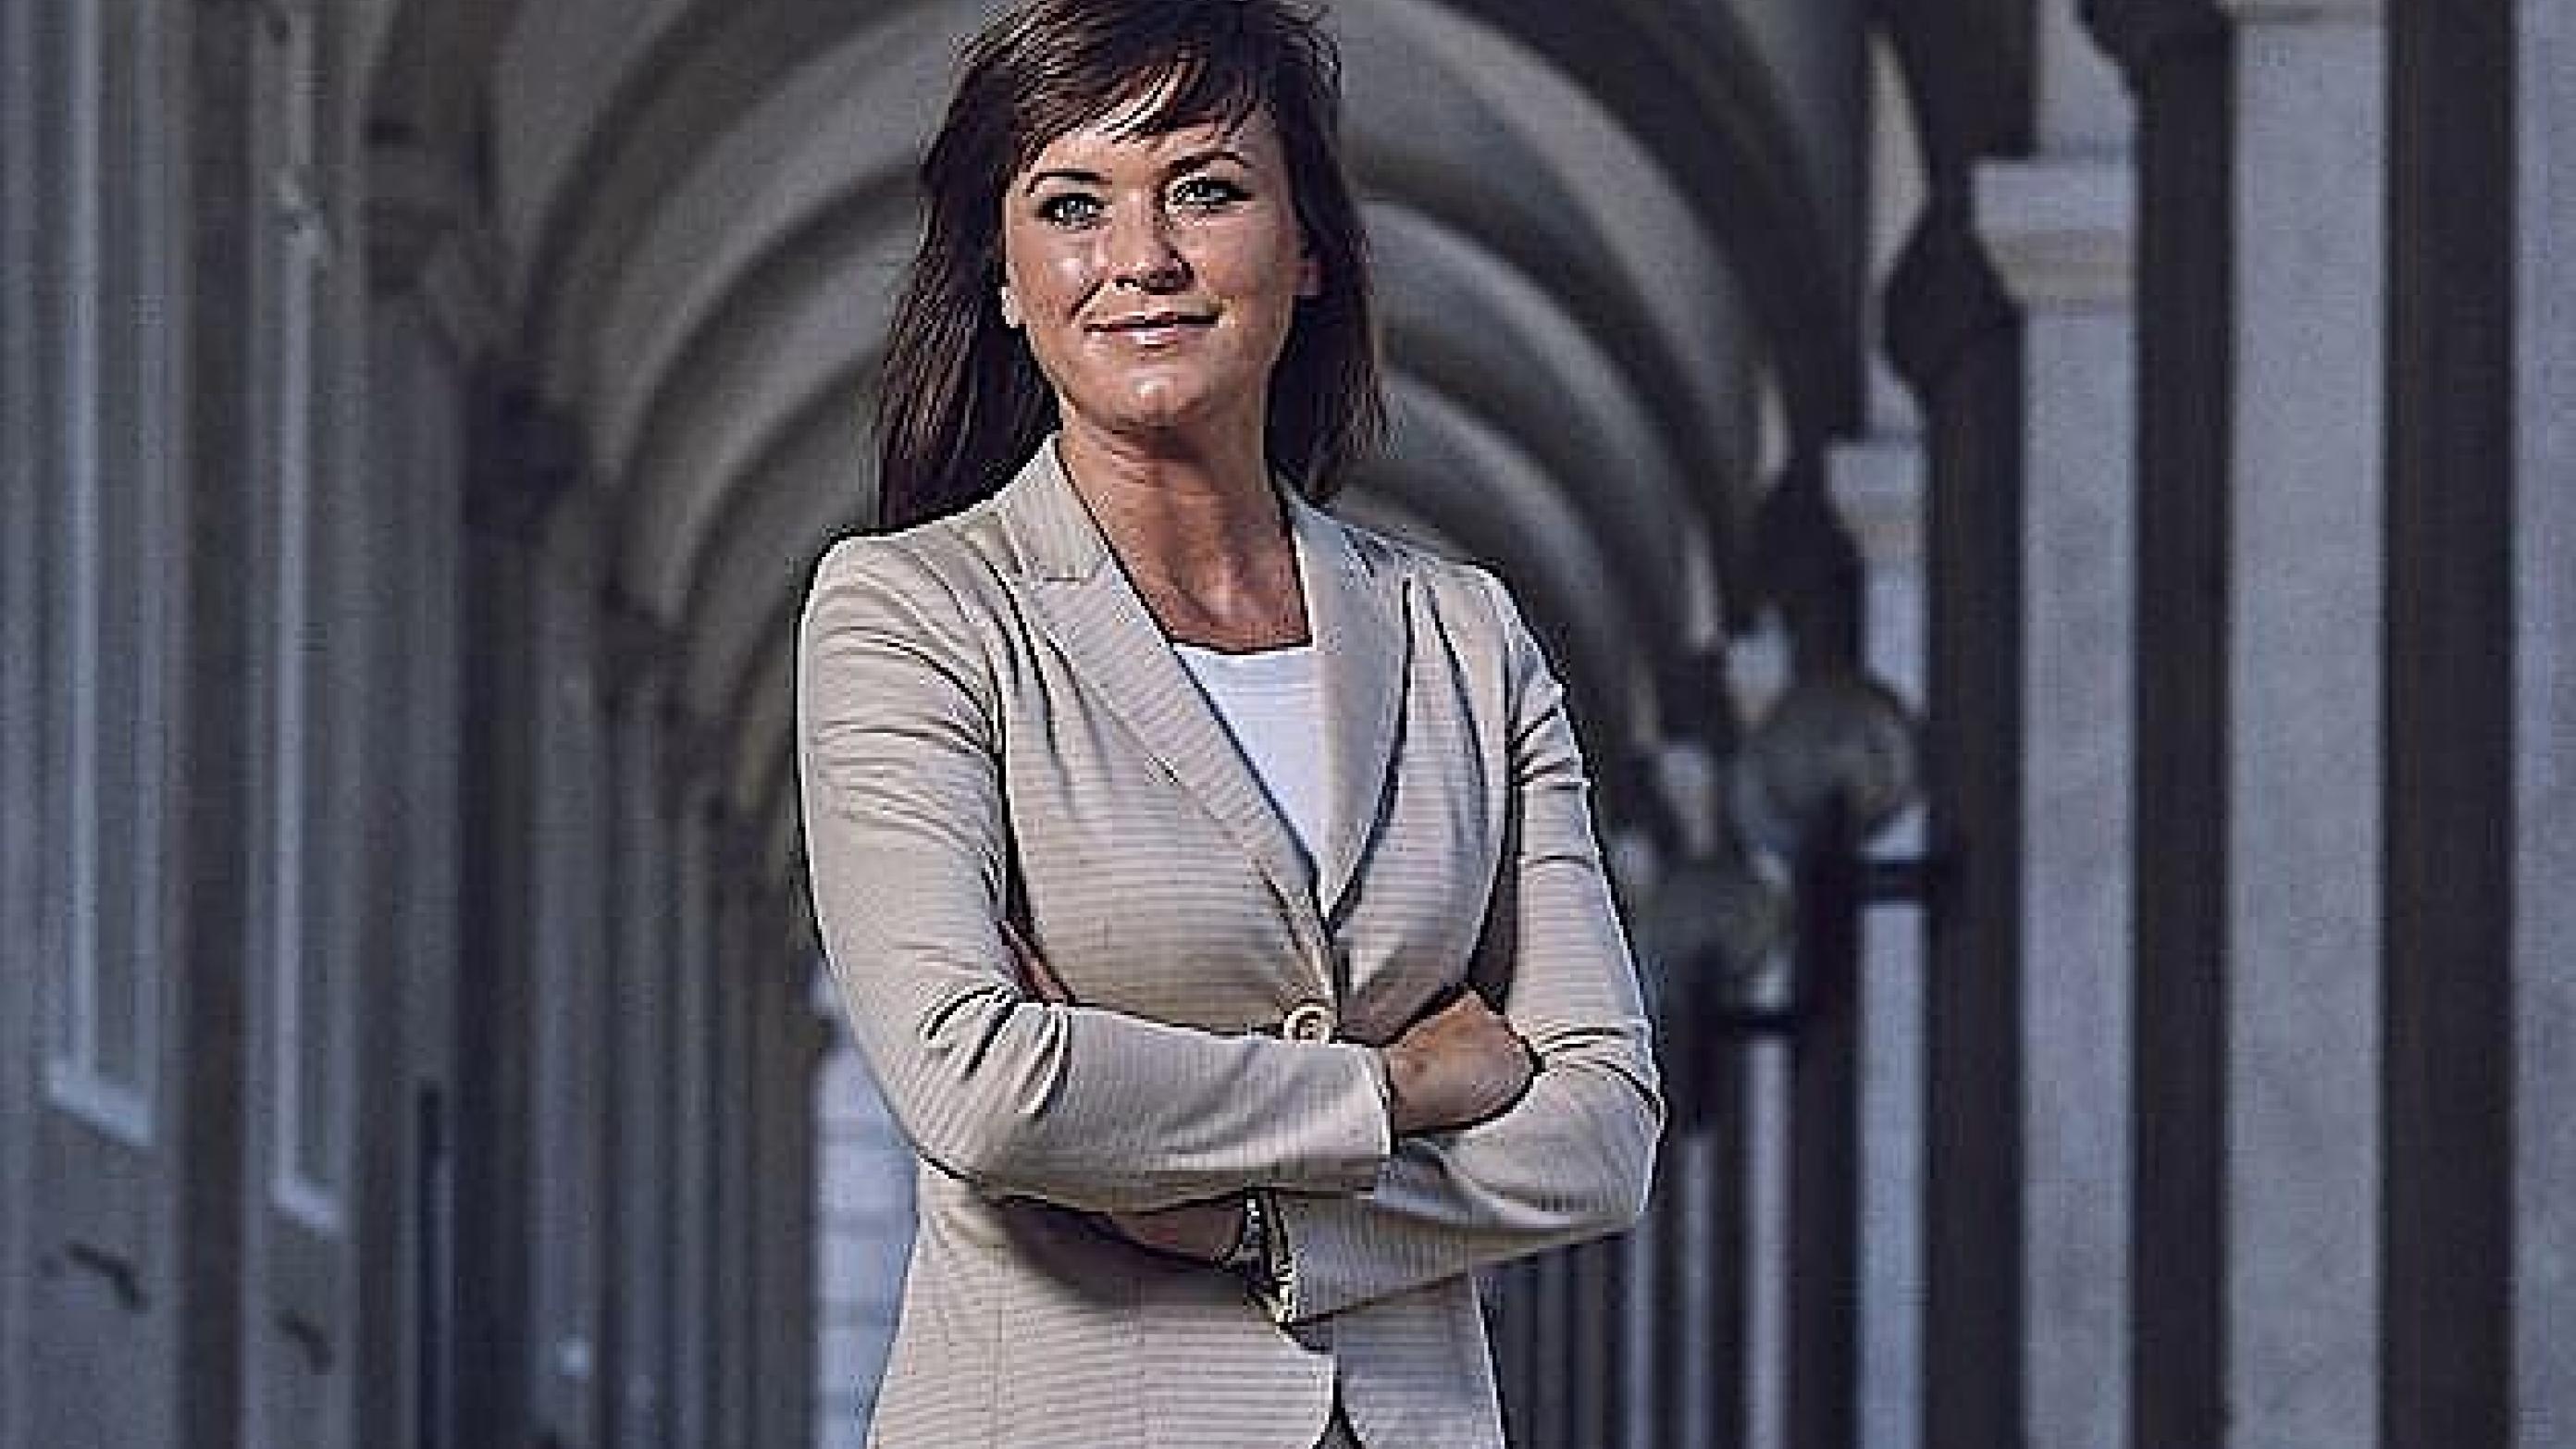 Sundhedsminister Sophie Løhde (V) - diskret sondering blandt partierne. Foto: Sundheds- og Ældreministeriet